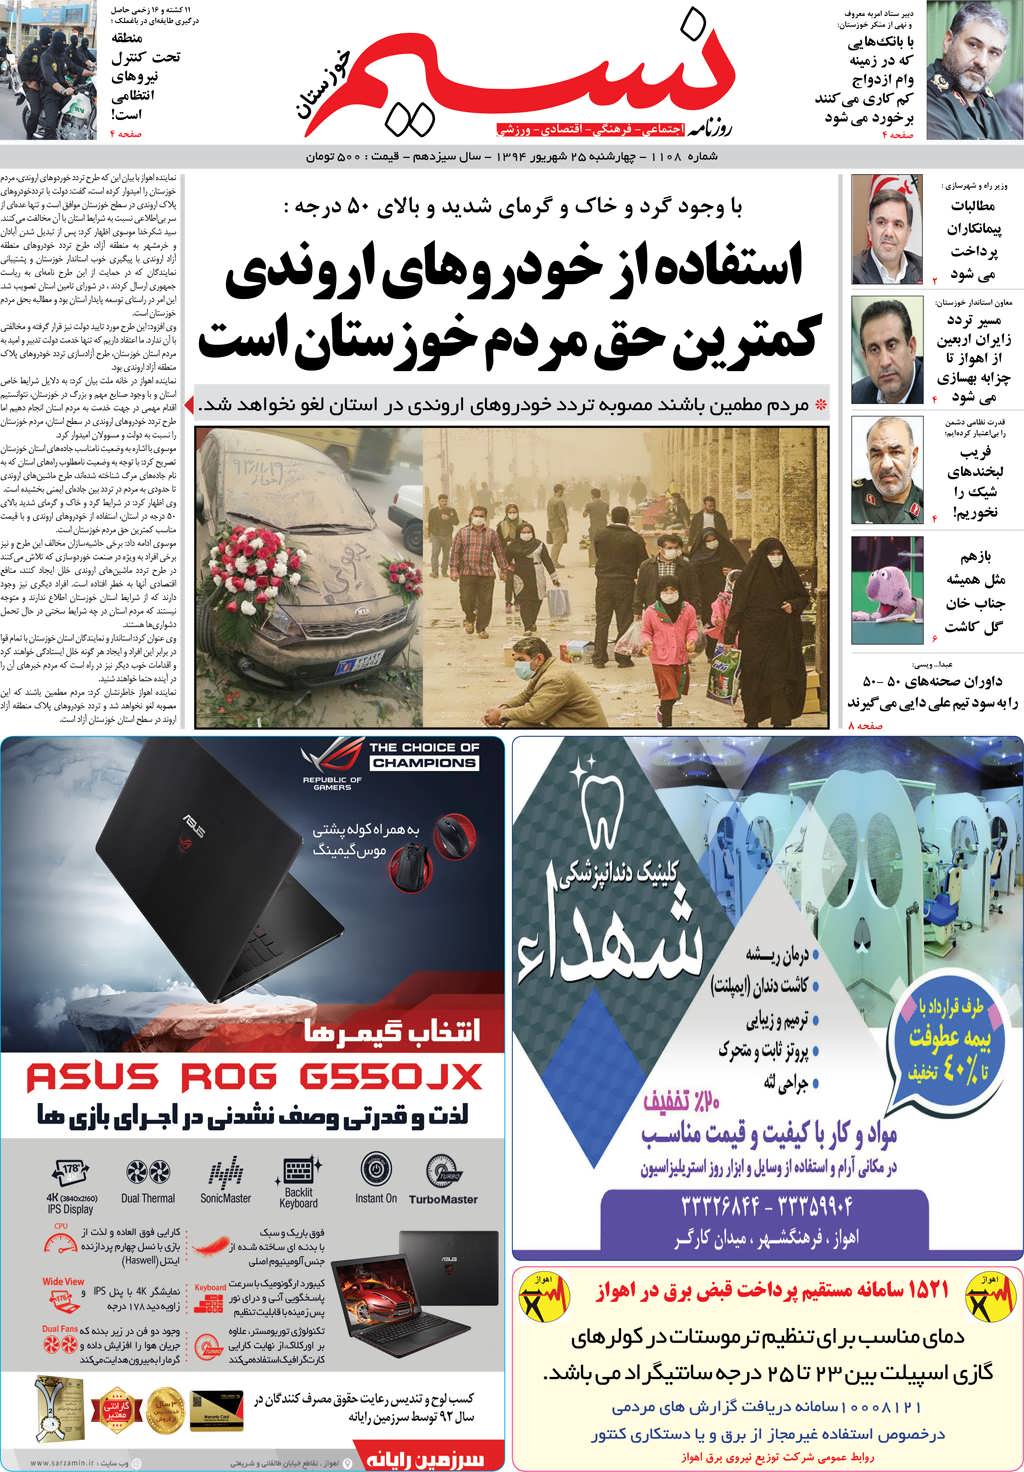 صفحه اصلی روزنامه نسیم شماره 1108